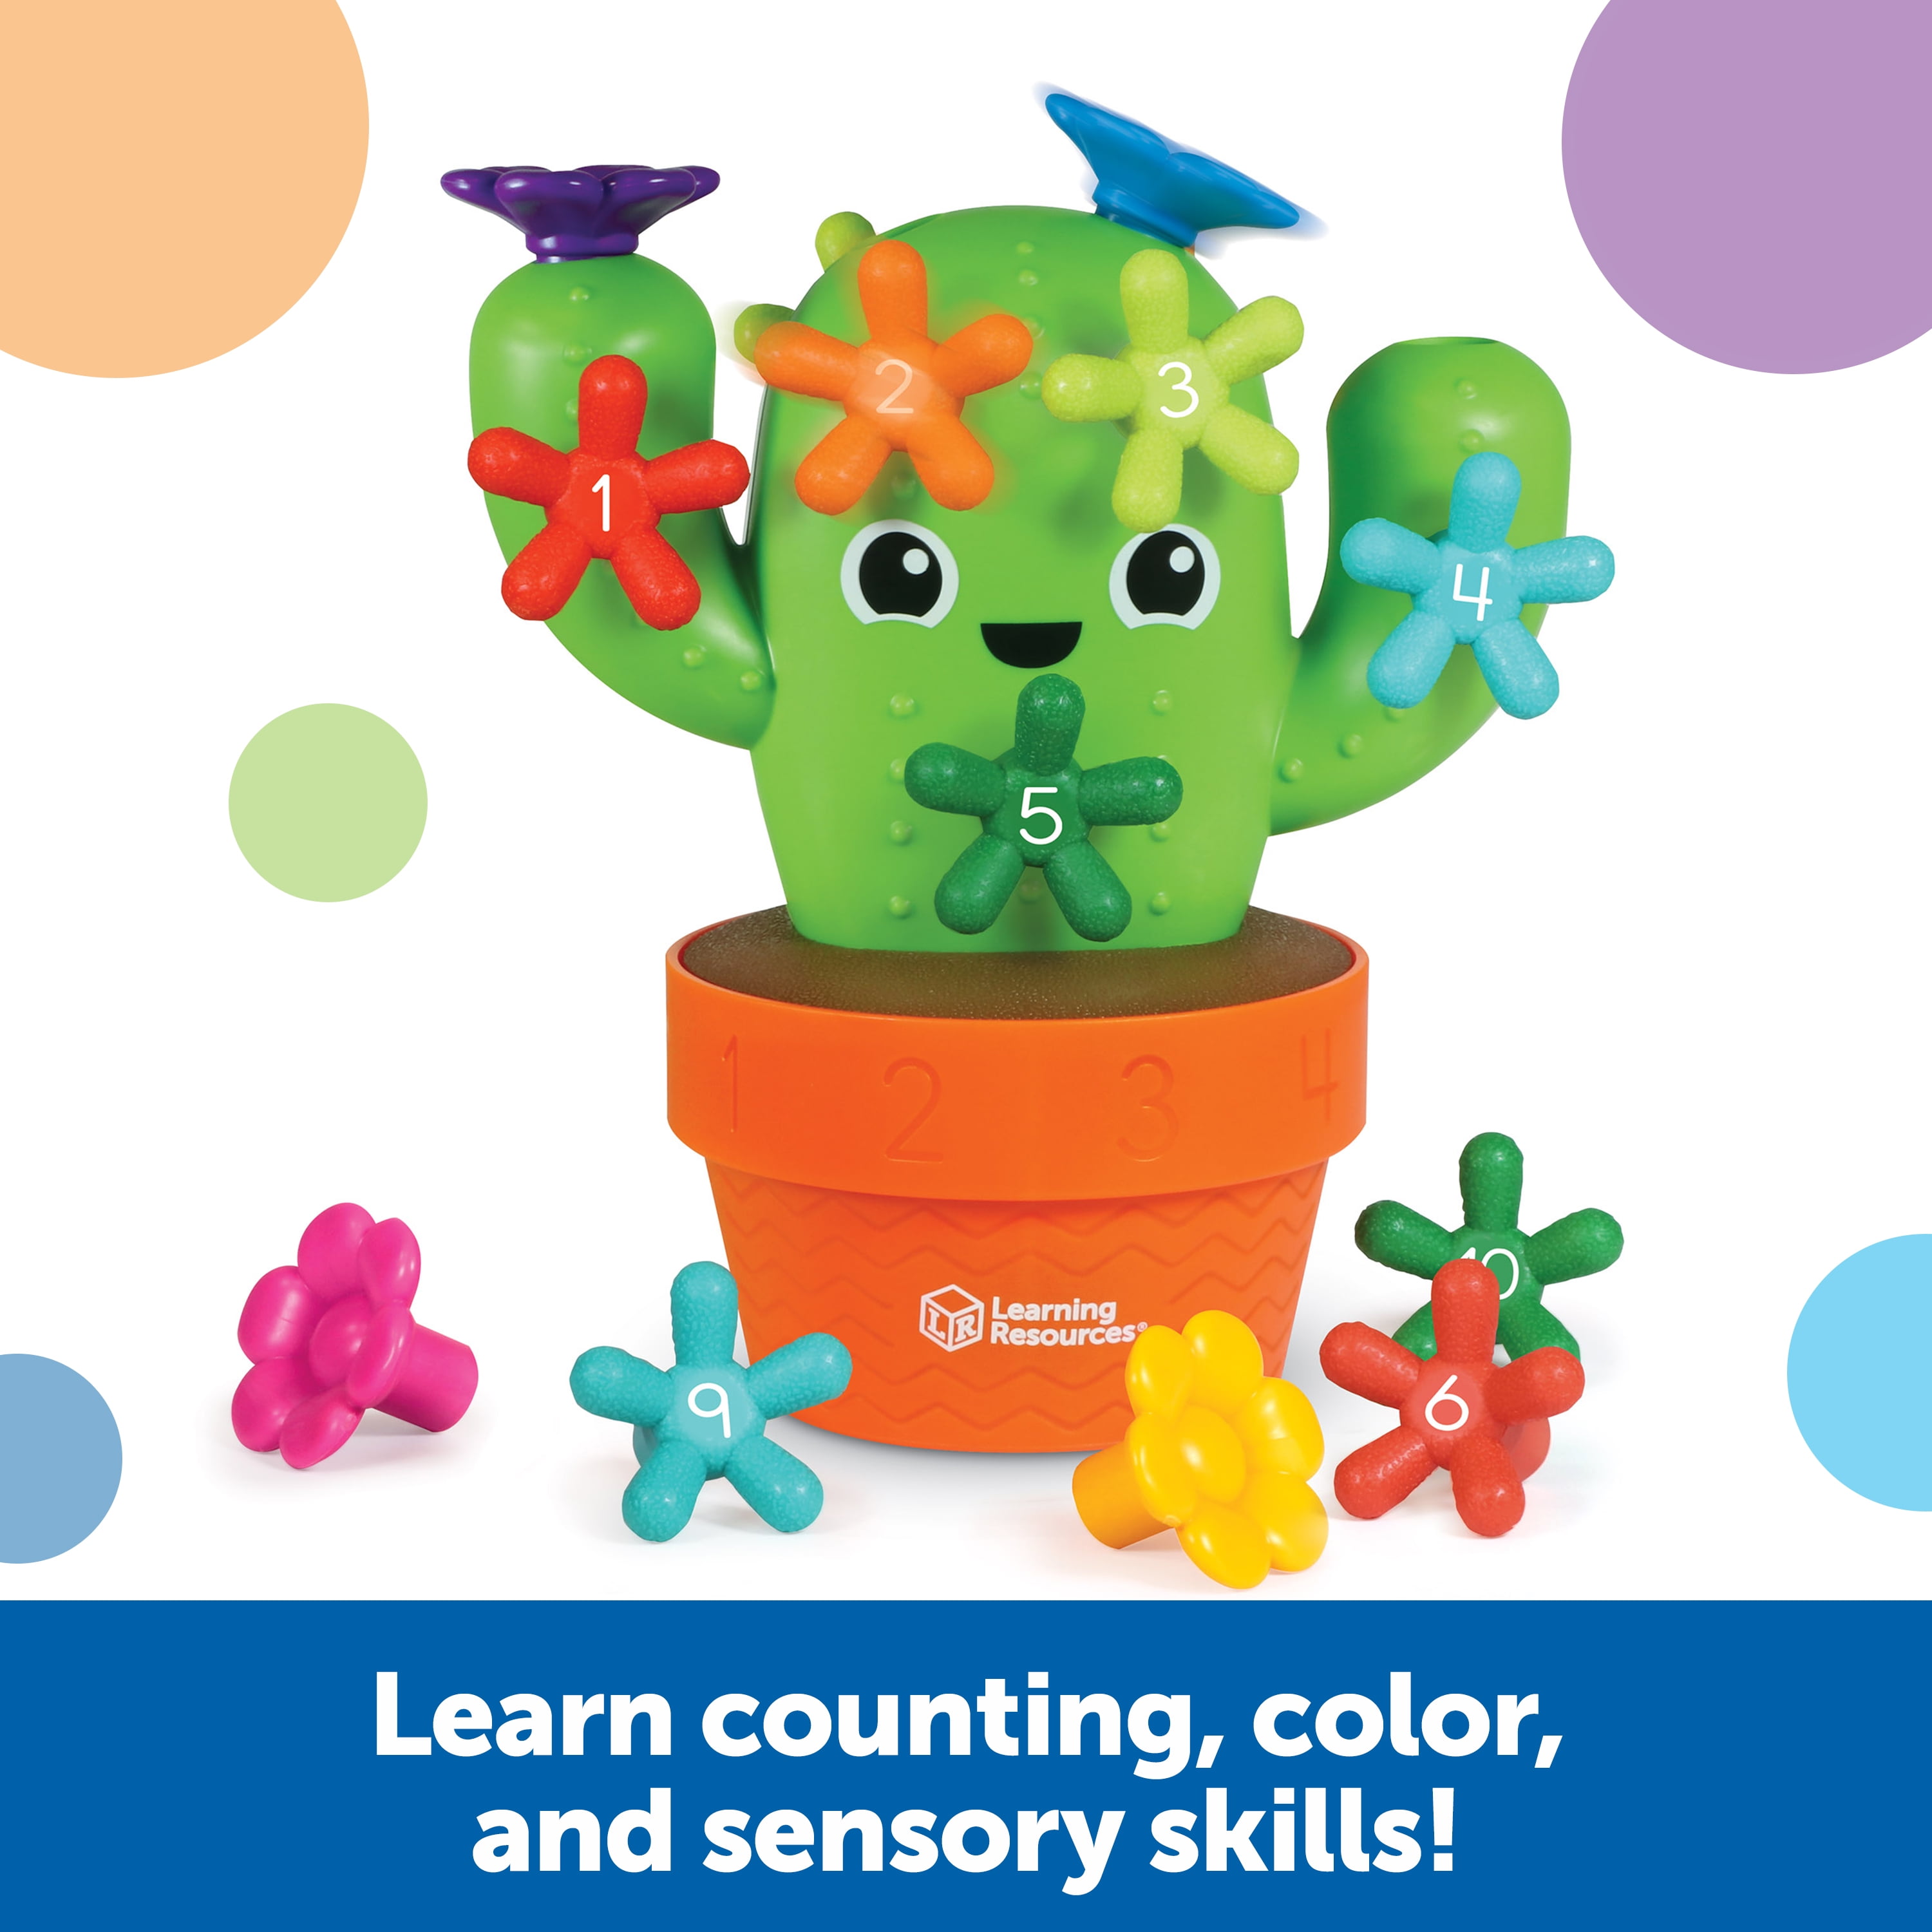 Cactus Scissor Skills: preschool workbook for kids ages 3-5 Cactus